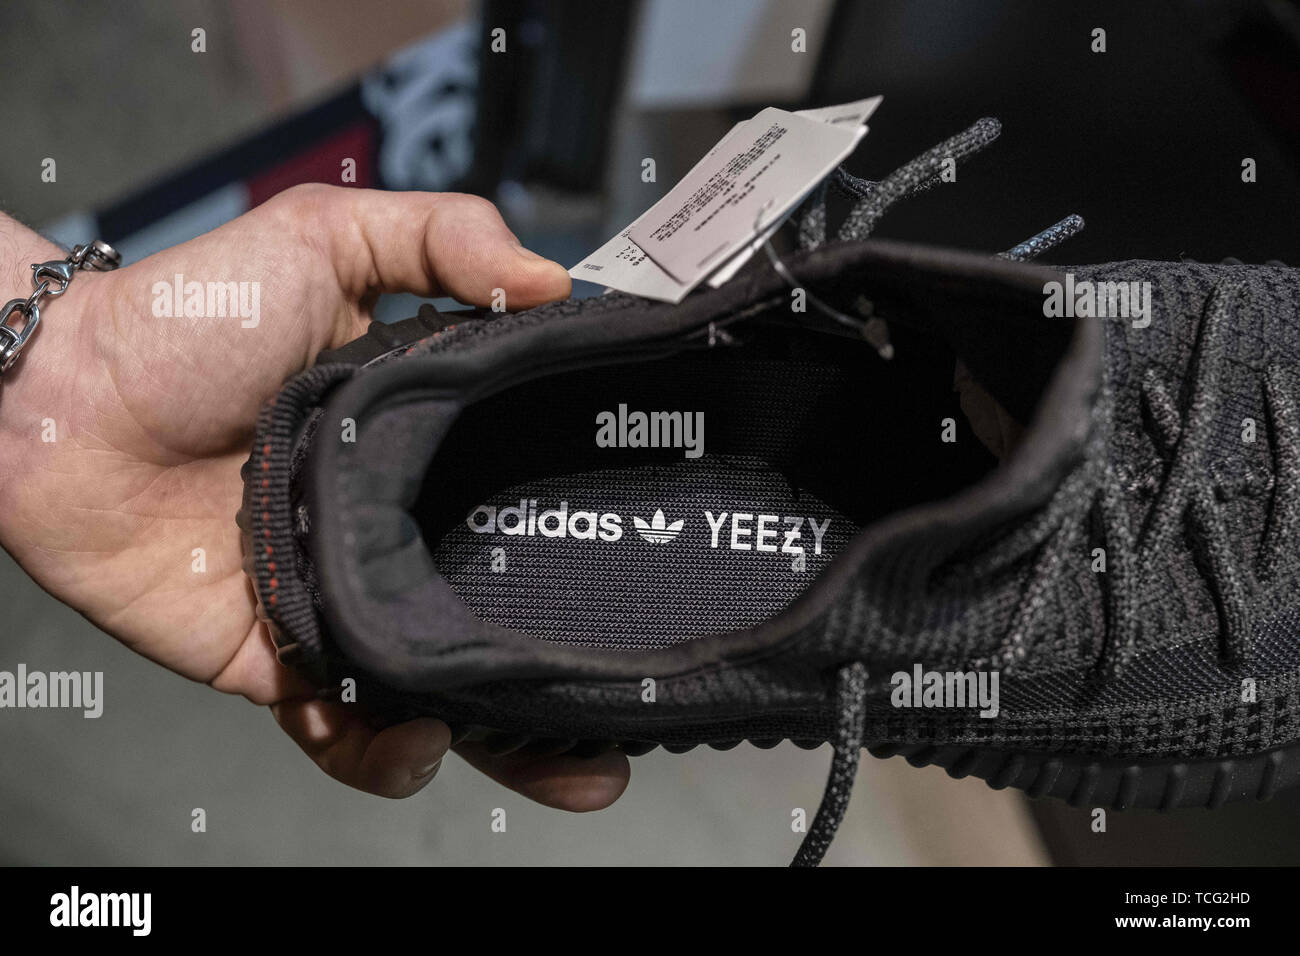 Barcelona, Cataluña, España. El 7 de junio de 2019. Un vendedor muestra la  nueva Adidas Yeezy Boost 350 modelo de zapato en la tienda del  distribuidor.El fabricante alemán de calzado deportivo Adidas